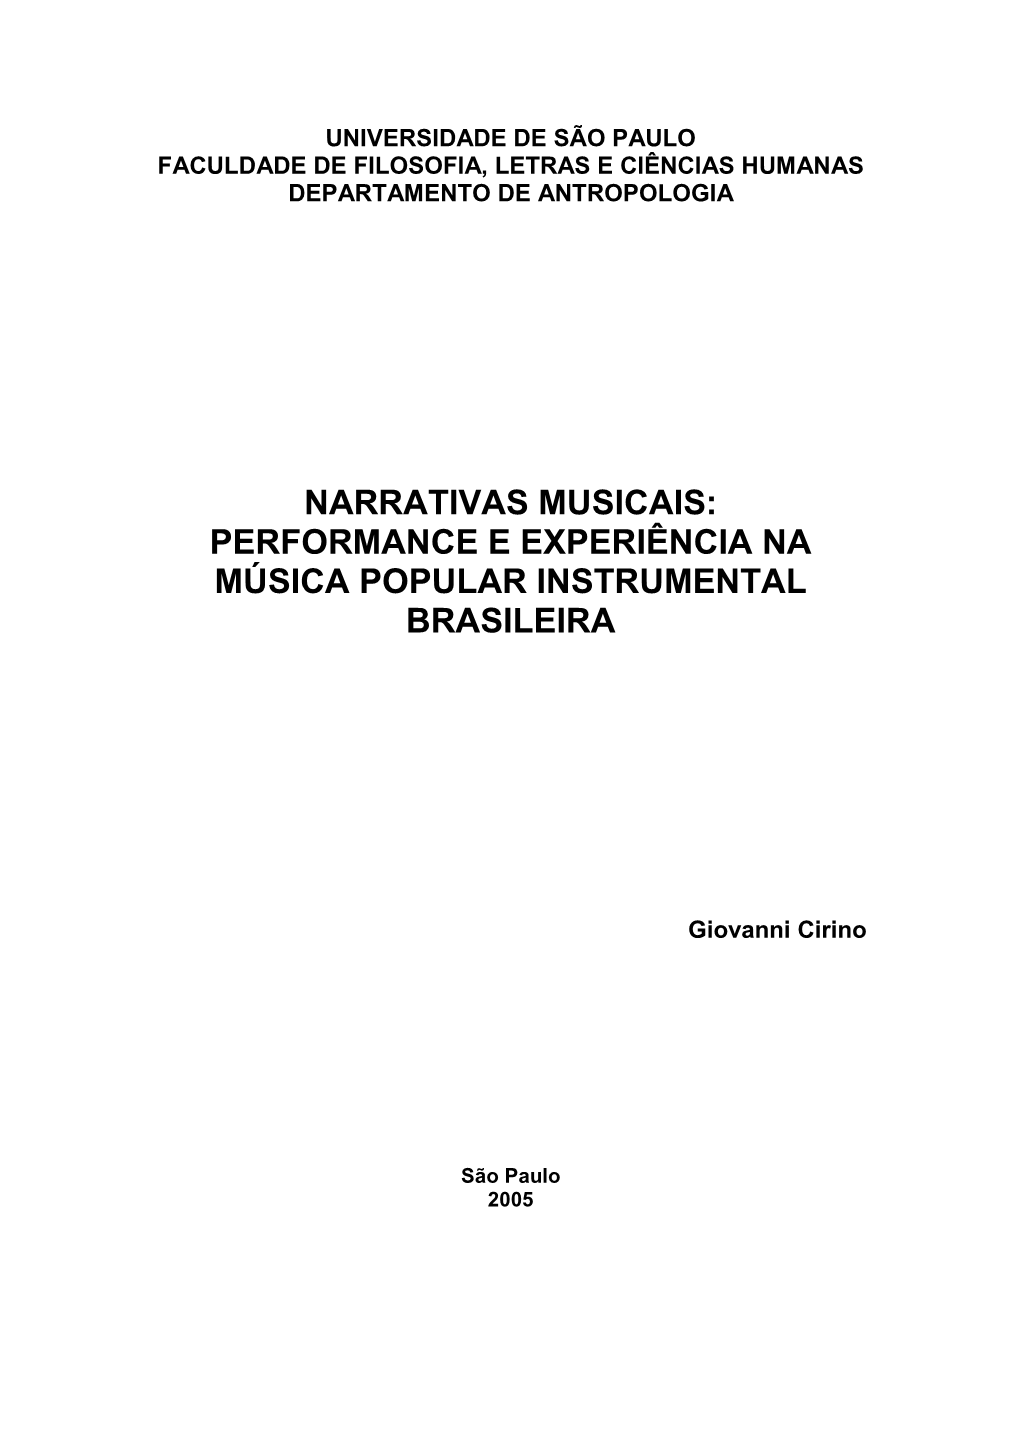 Performance E Experiência Na Música Popular Instrumental Brasileira